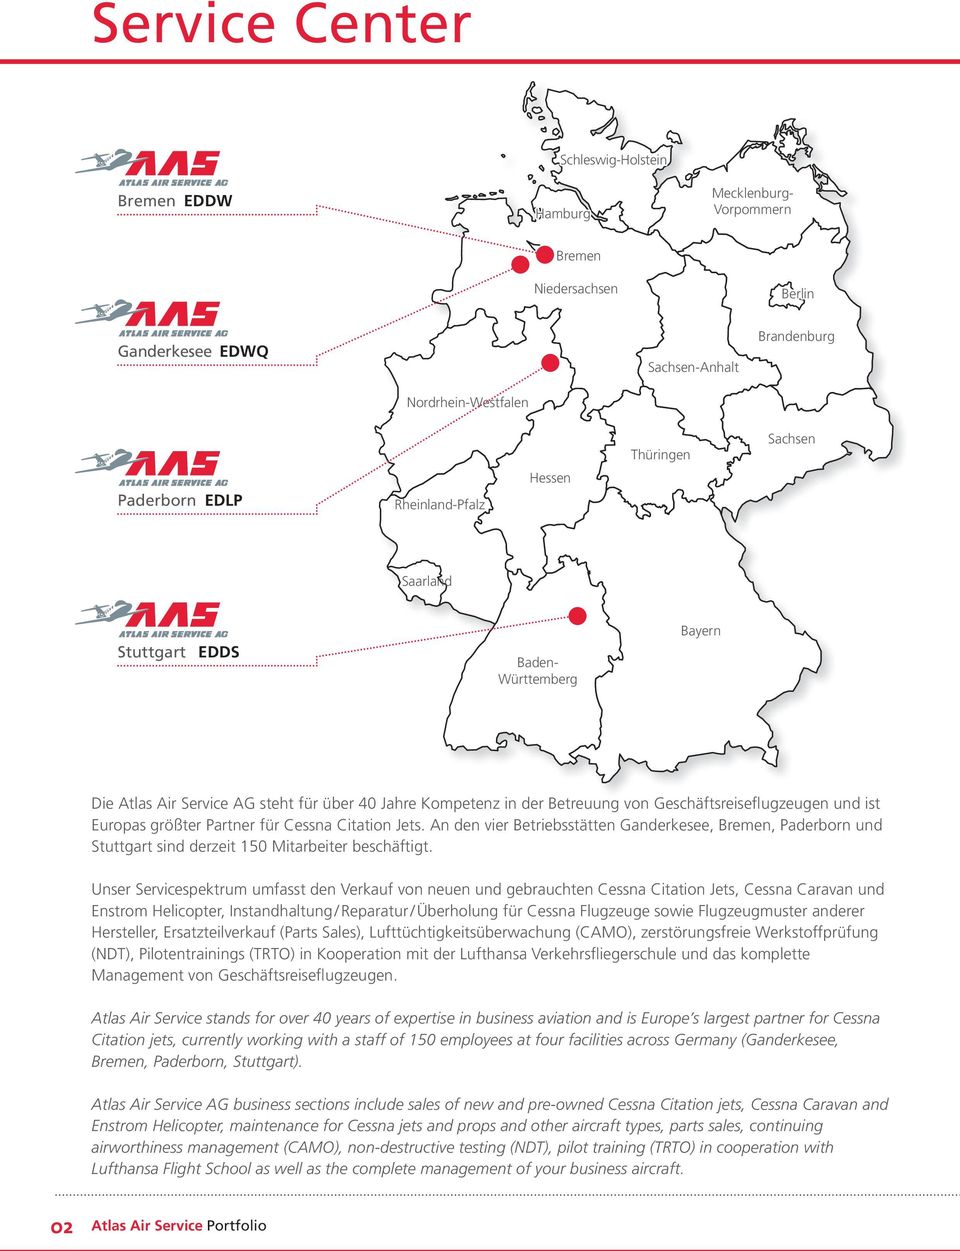 und ist Europas größter Partner für Cessna Citation Jets. An den vier Betriebsstätten Ganderkesee, Bremen, Paderborn und Stuttgart sind derzeit 150 Mitarbeiter beschäftigt.